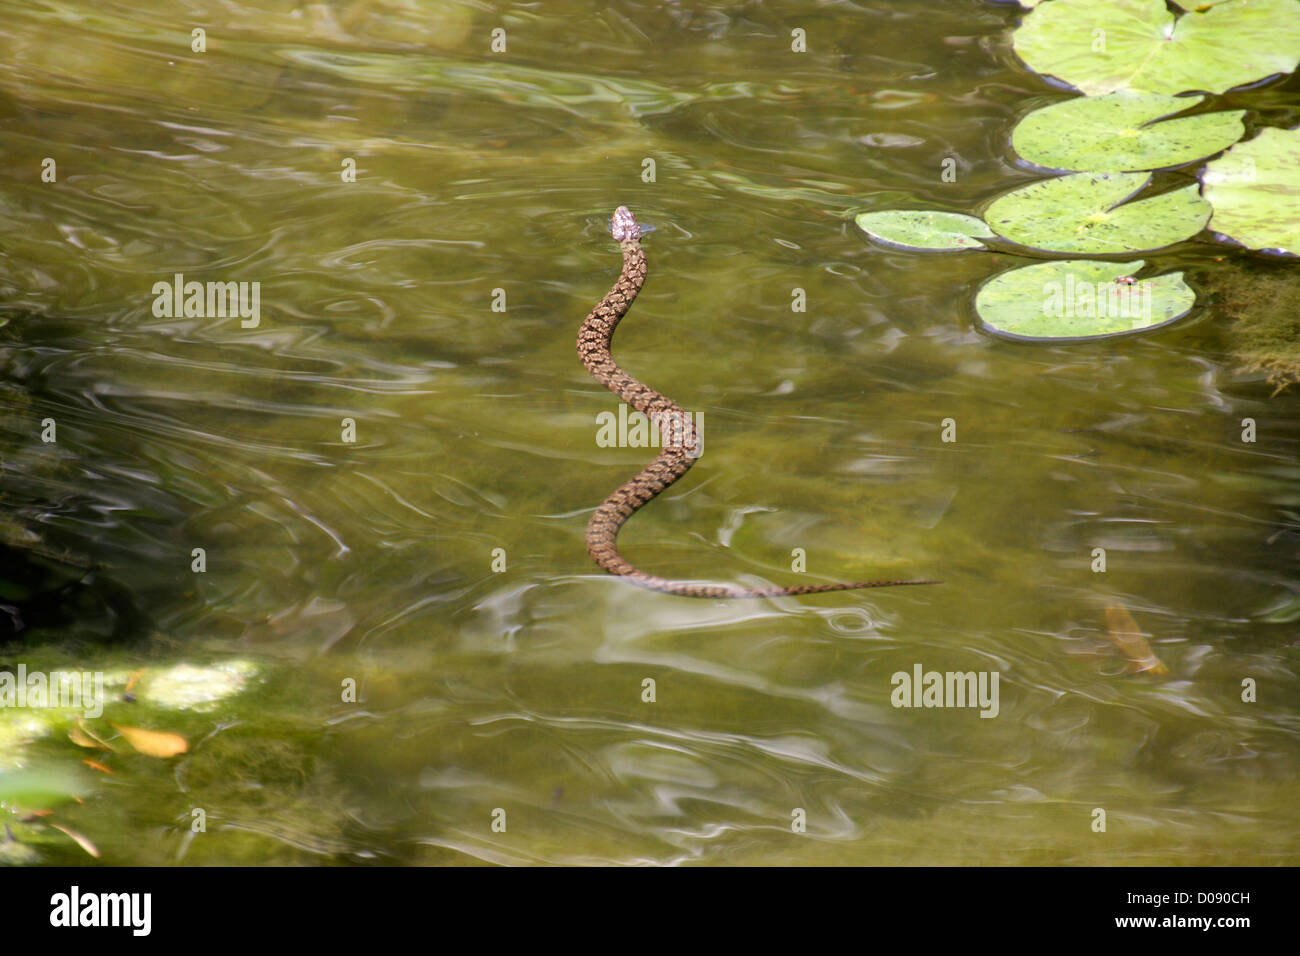 Parcialmente sumergido en un lago de serpientes de agua Foto de stock